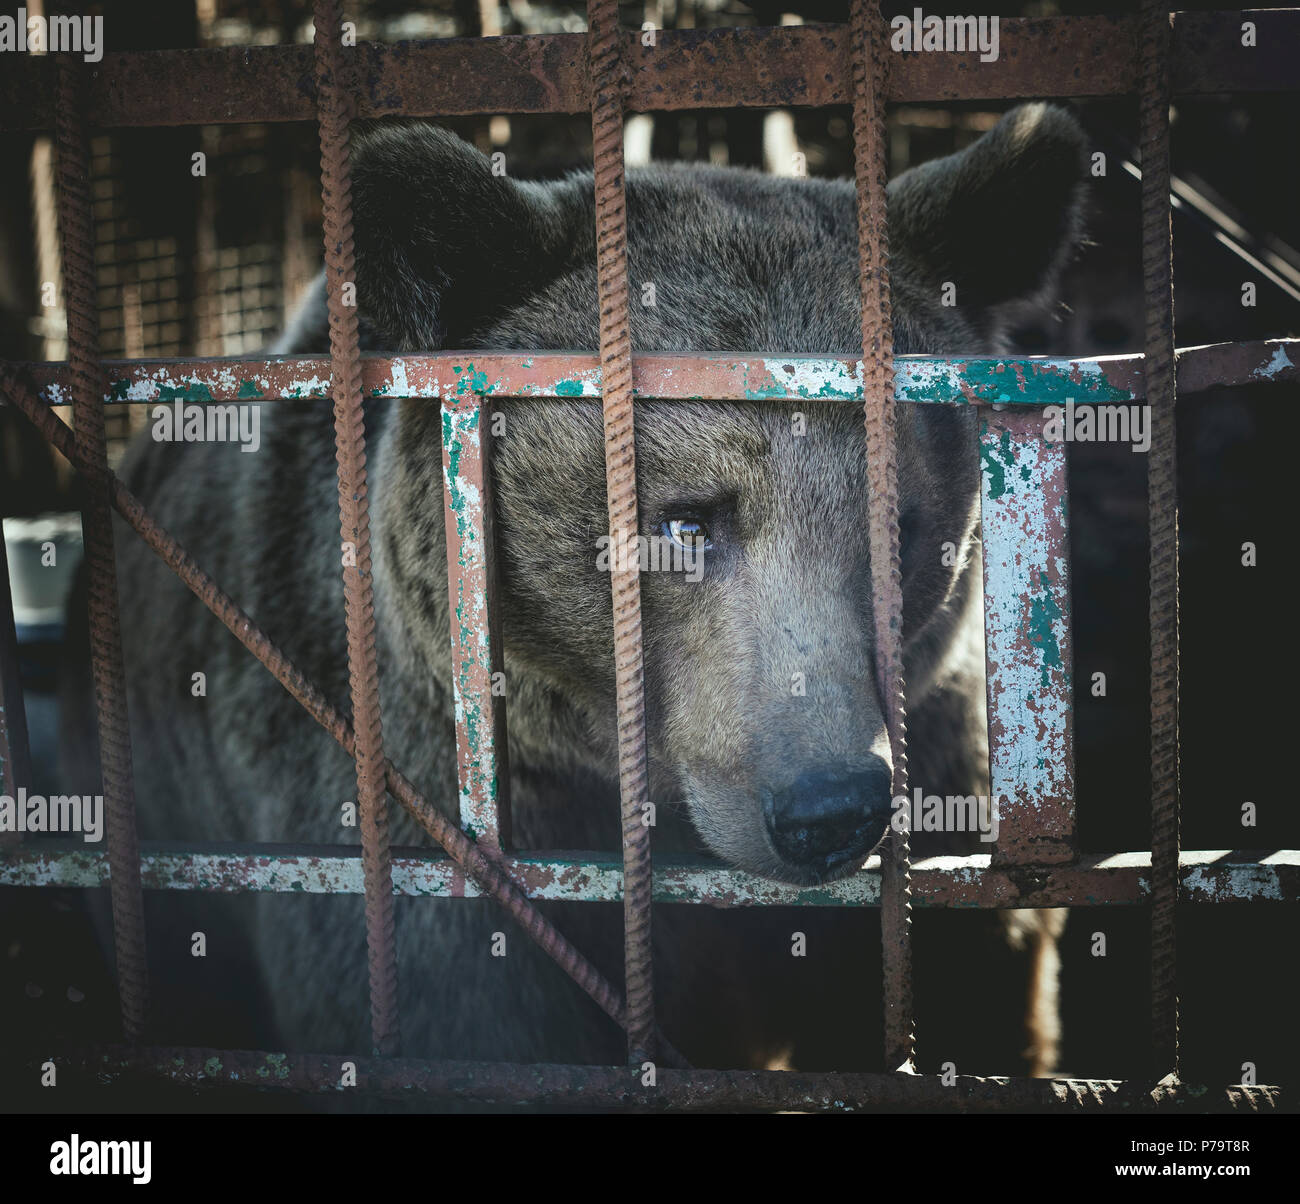 Bear in a cage, Suchumi, Abkhazia, Georgia Stock Photo